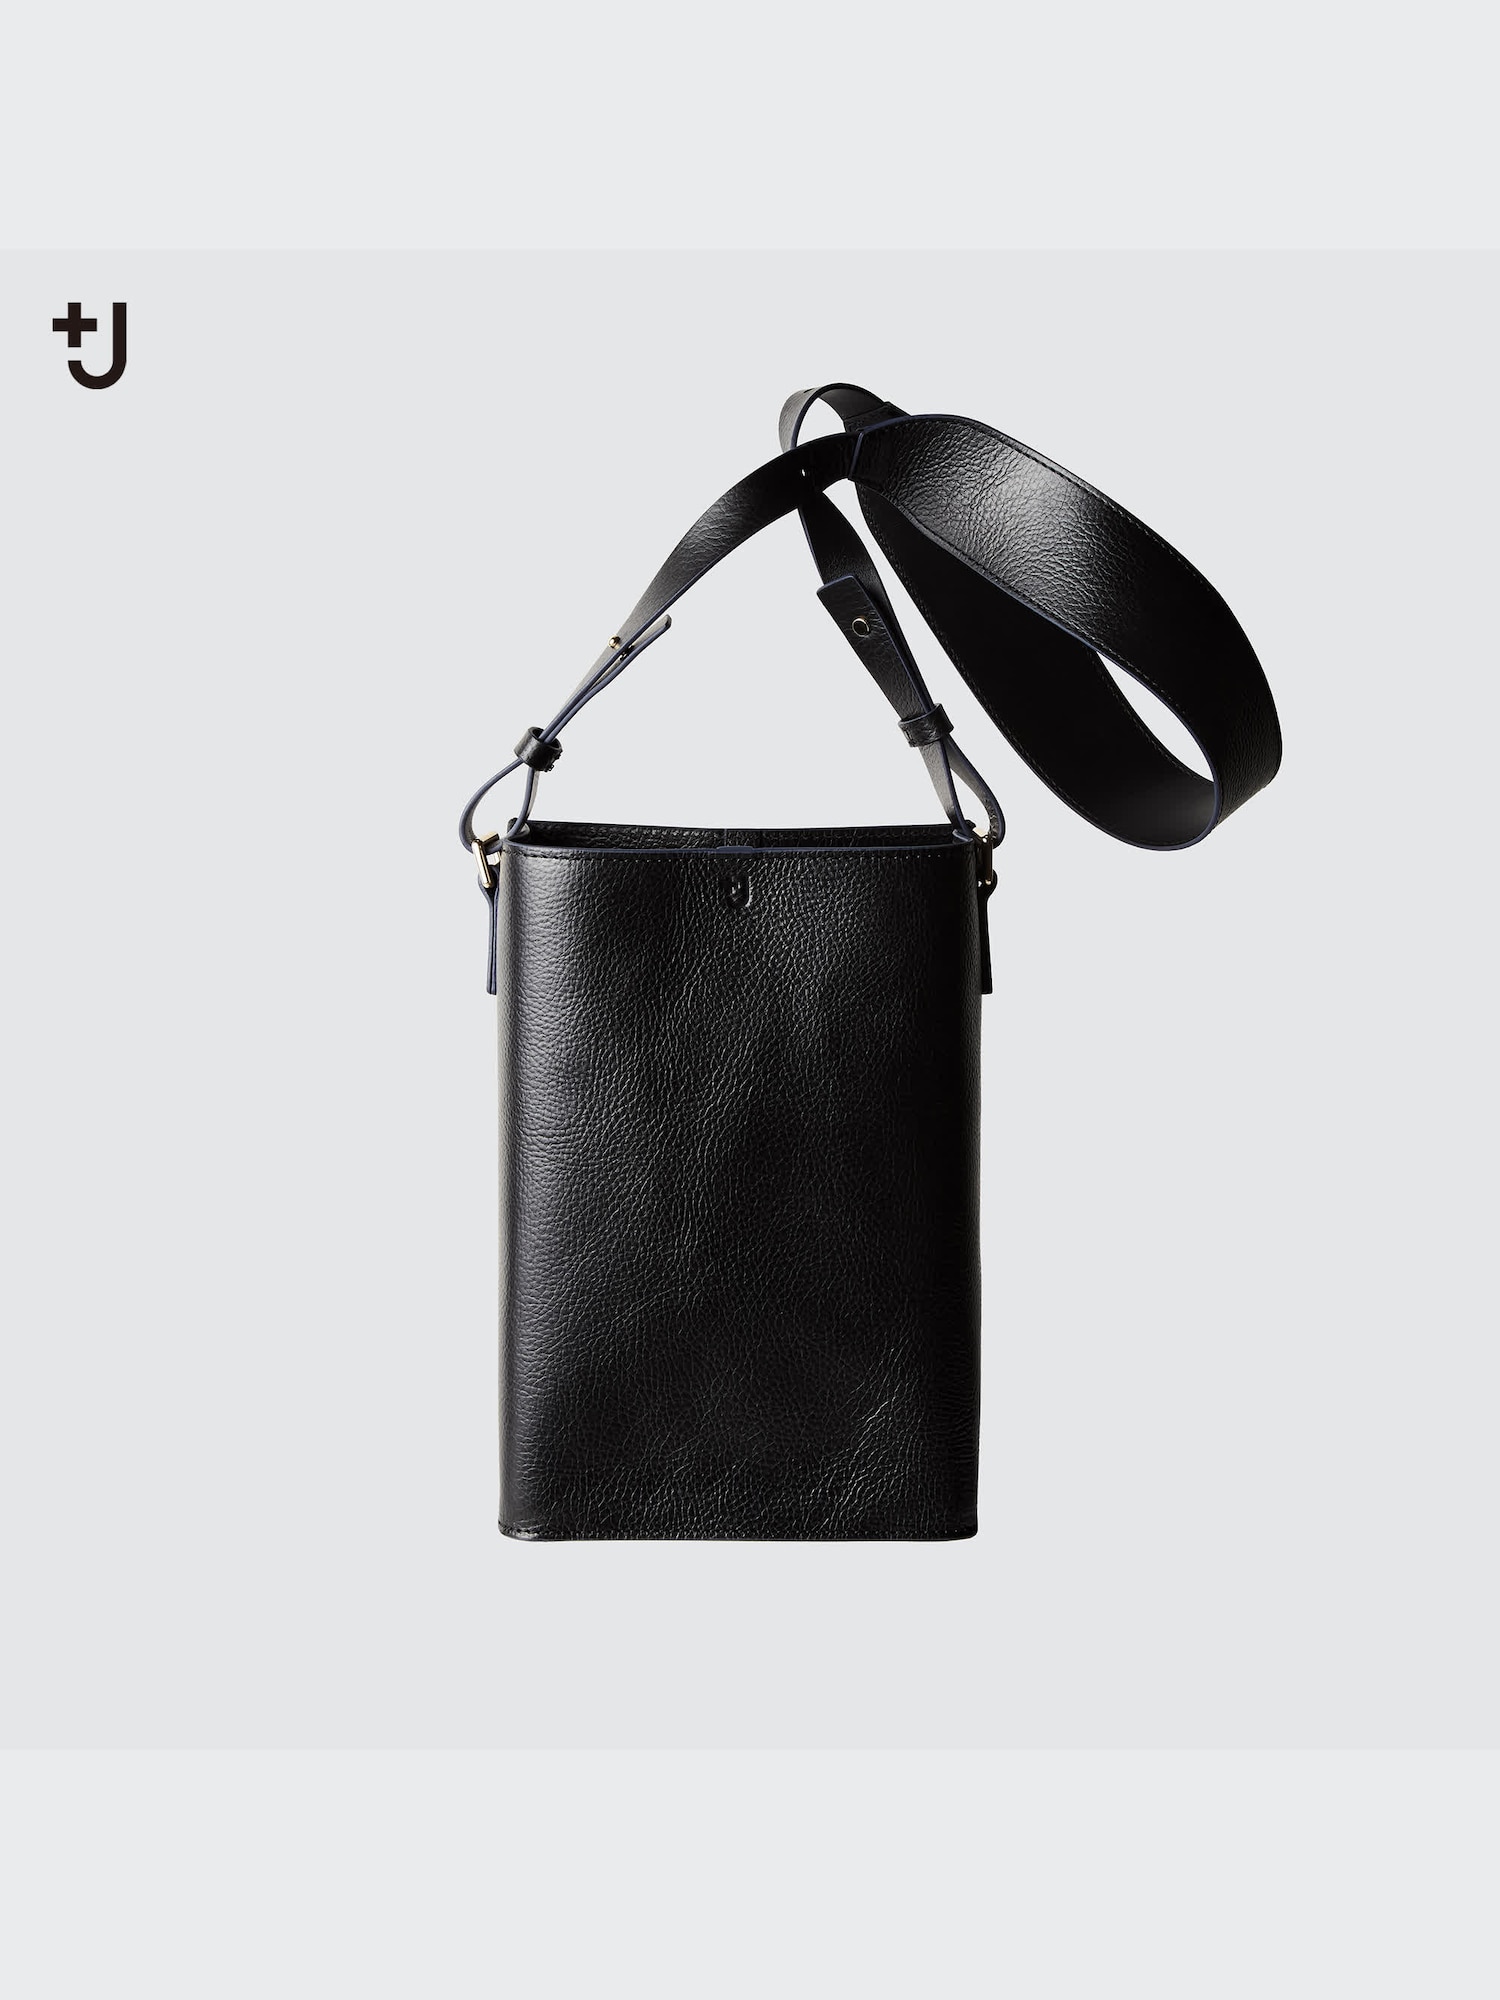 J Leather Shoulder Bag | UNIQLO US